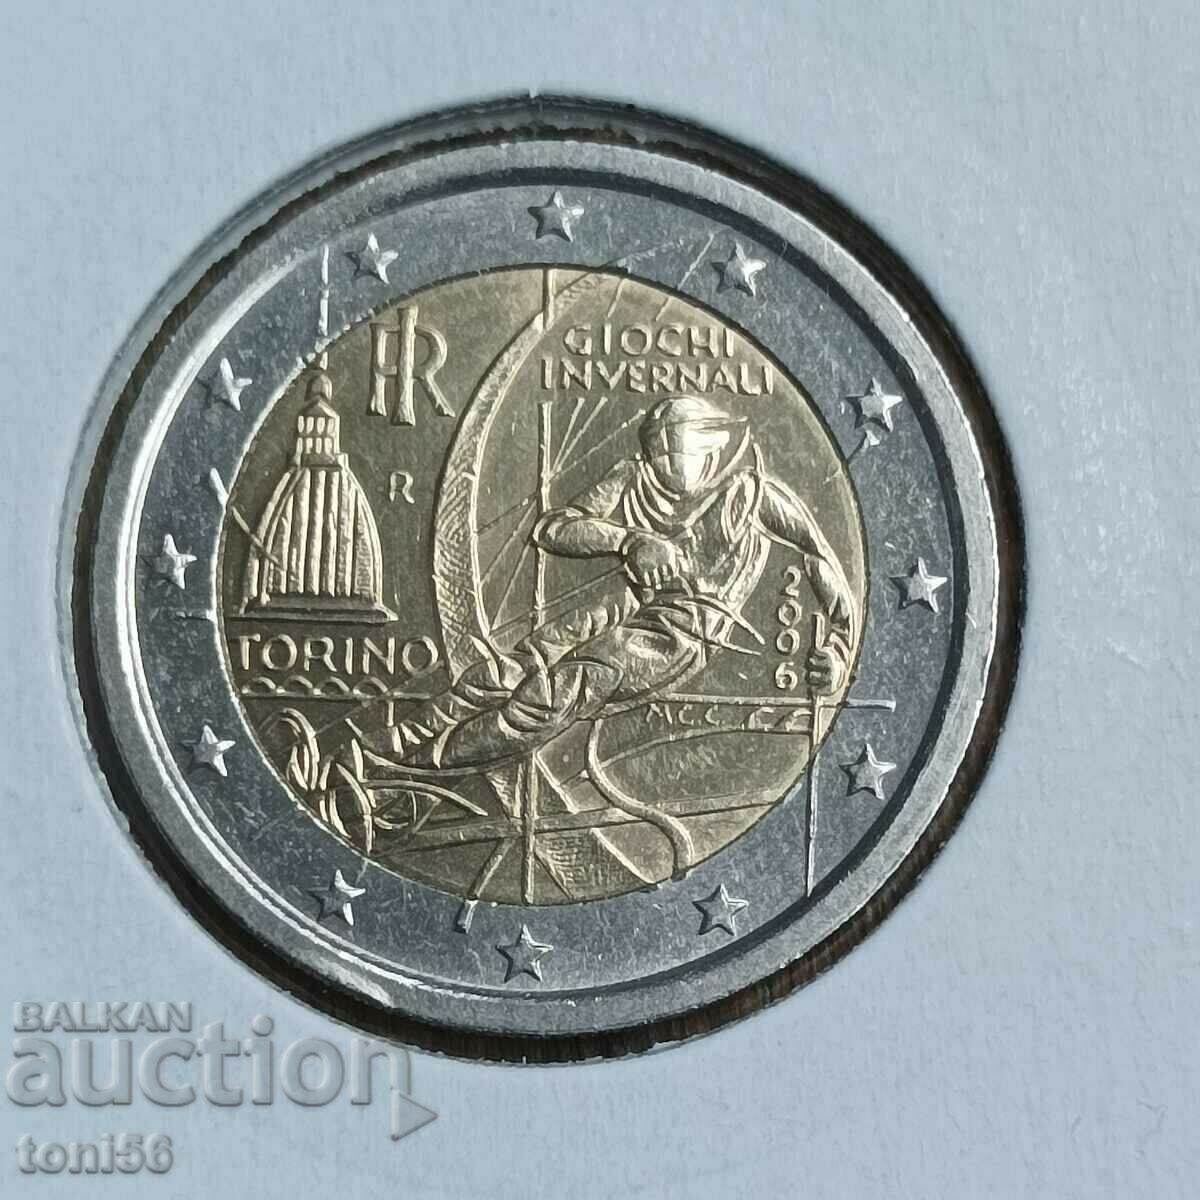 Ιταλία 2 ευρώ 2006 - Τορίνο